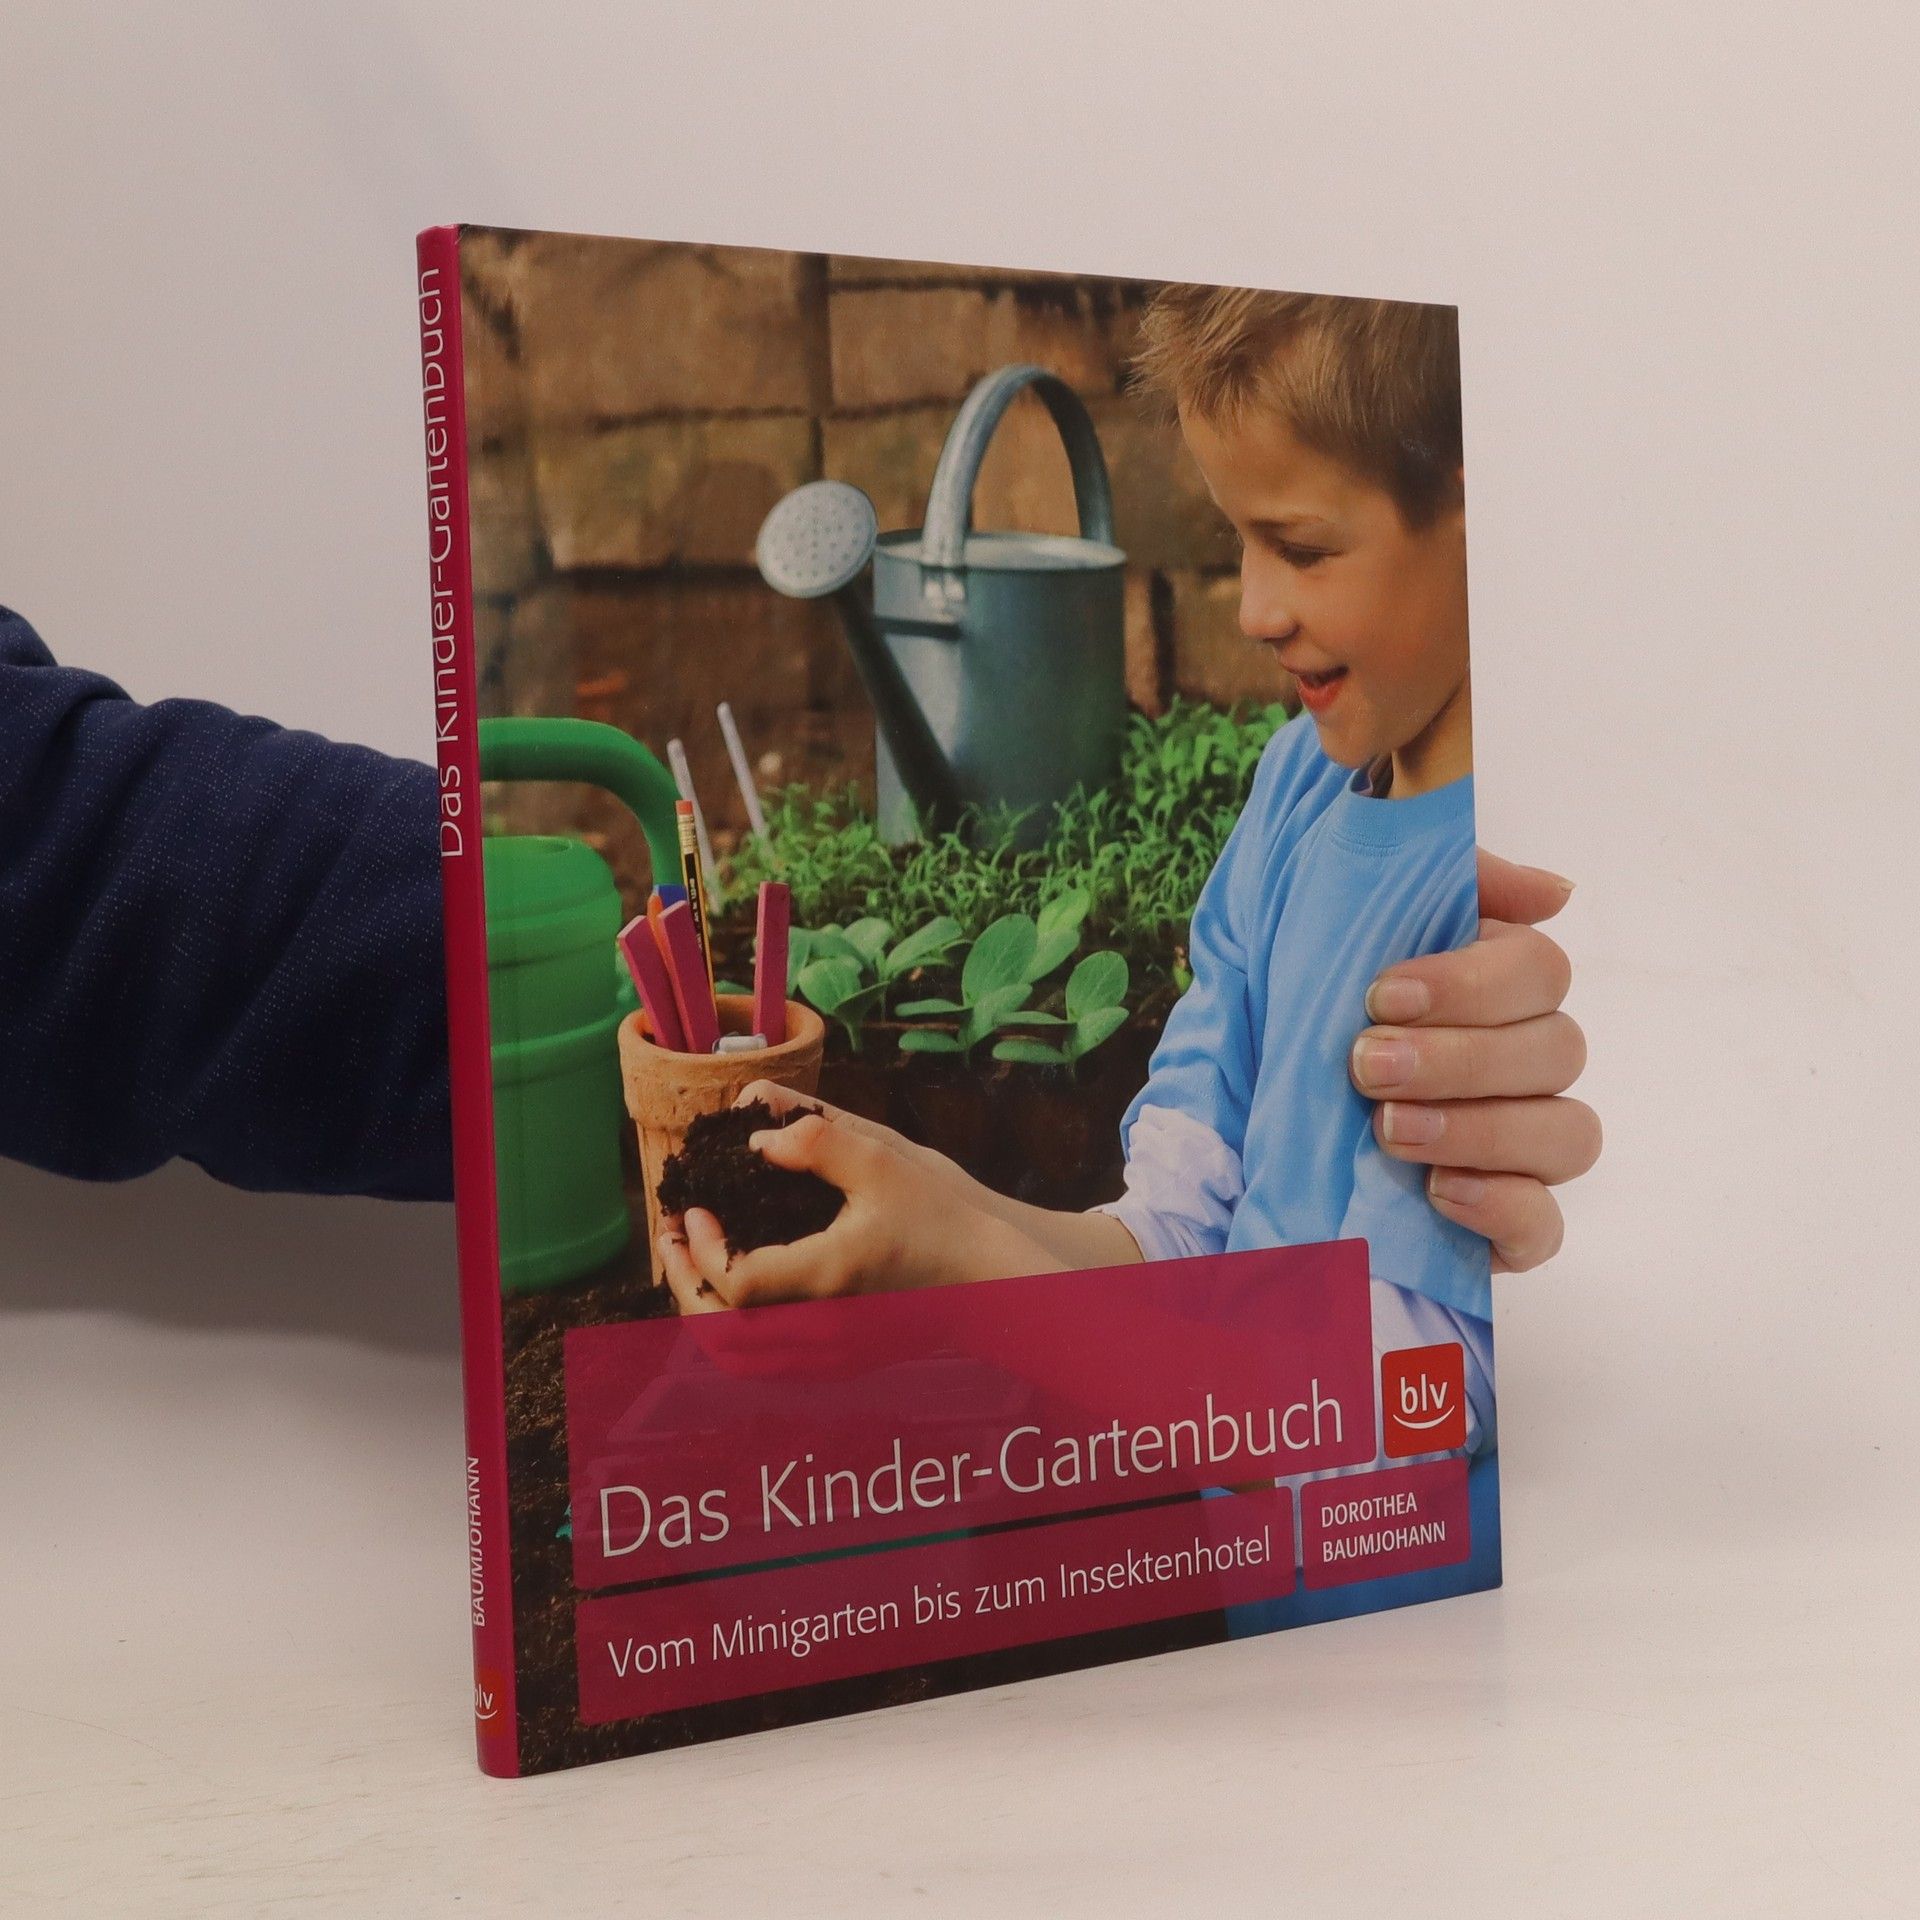 Das Kinder-Gartenbuch - Dorothea Baumjohann